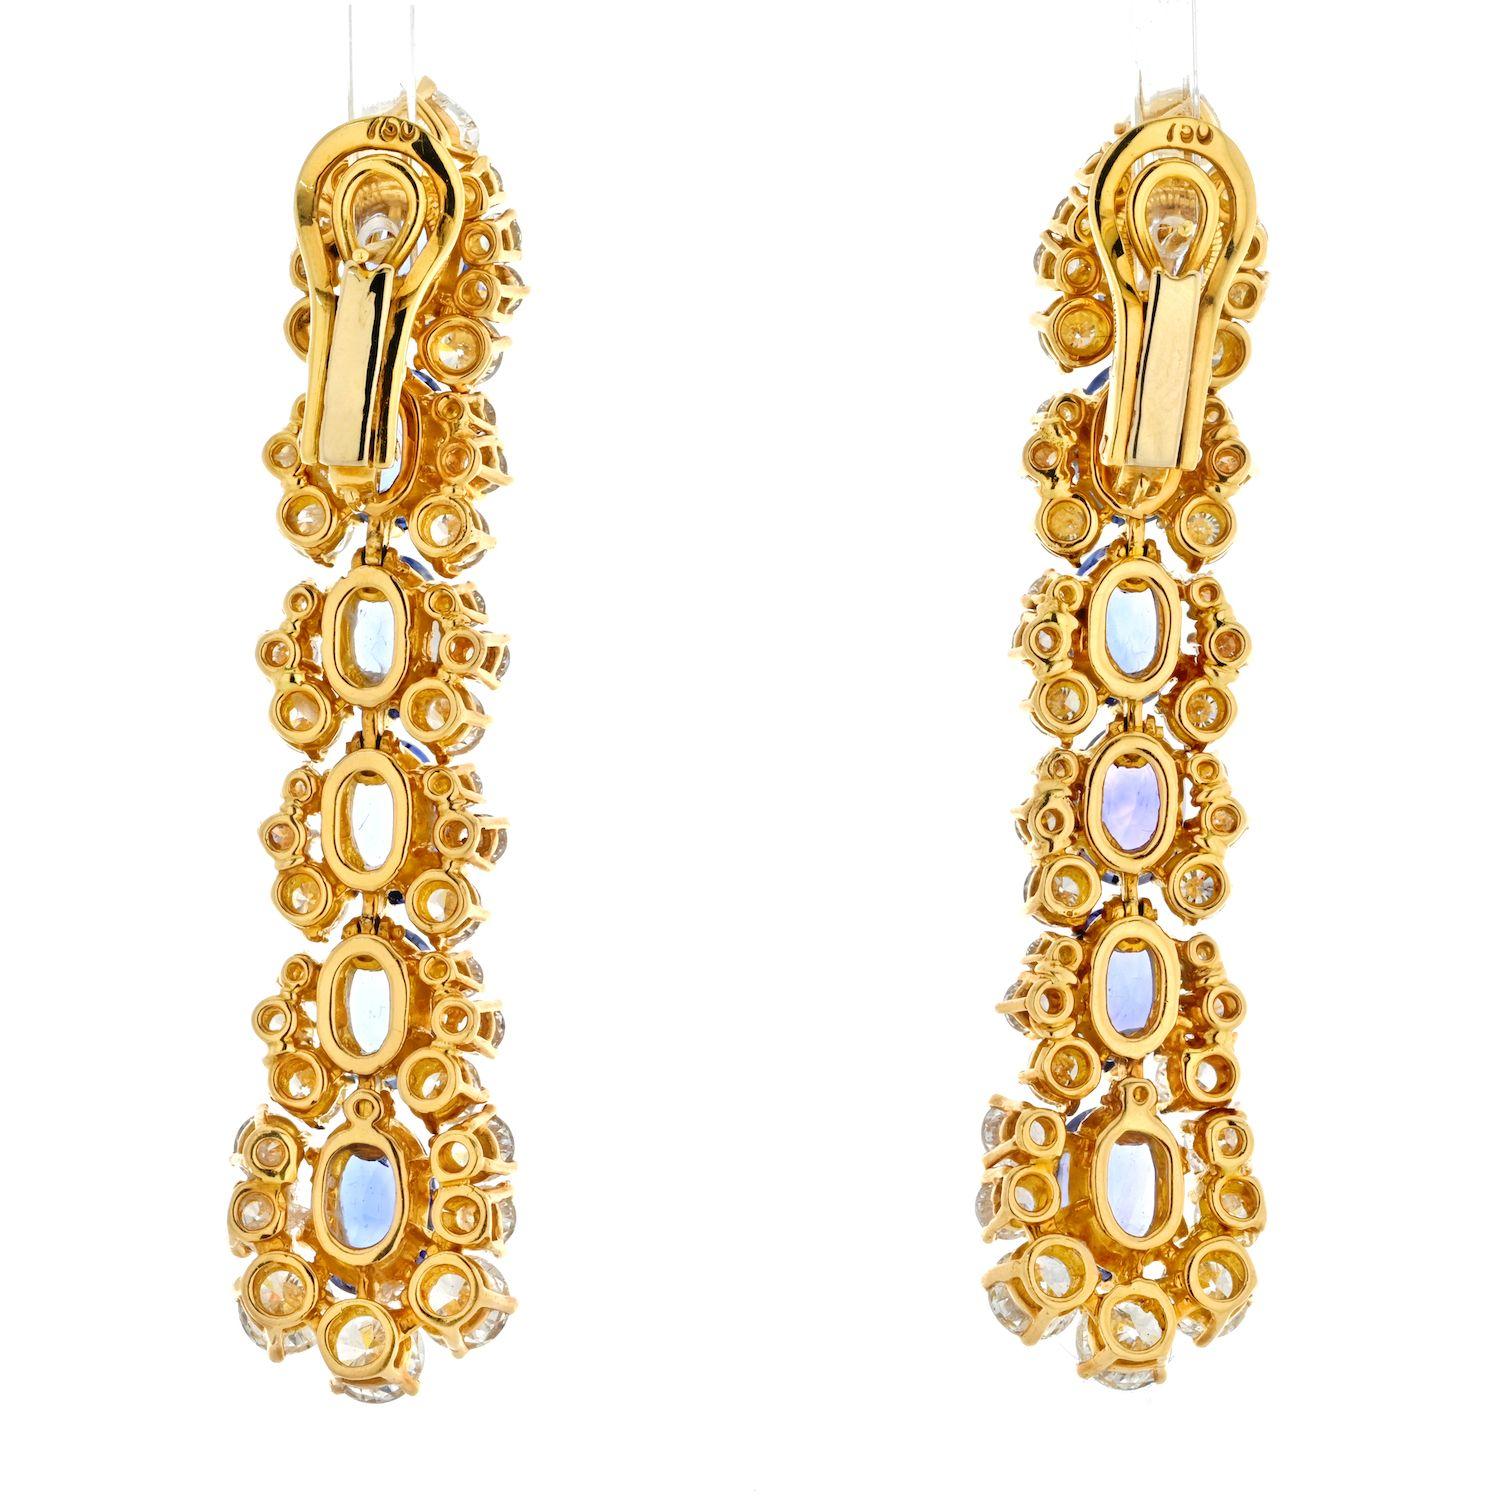 Die Marina B Ohrringe aus 18 Karat Gelbgold mit Diamanten und Saphiren sind etwas ganz Besonderes. Sie zeichnen sich durch ein einzigartiges Design mit einer Kombination aus atemberaubenden Diamanten, Gelbgold und leuchtenden Saphiren aus und sind